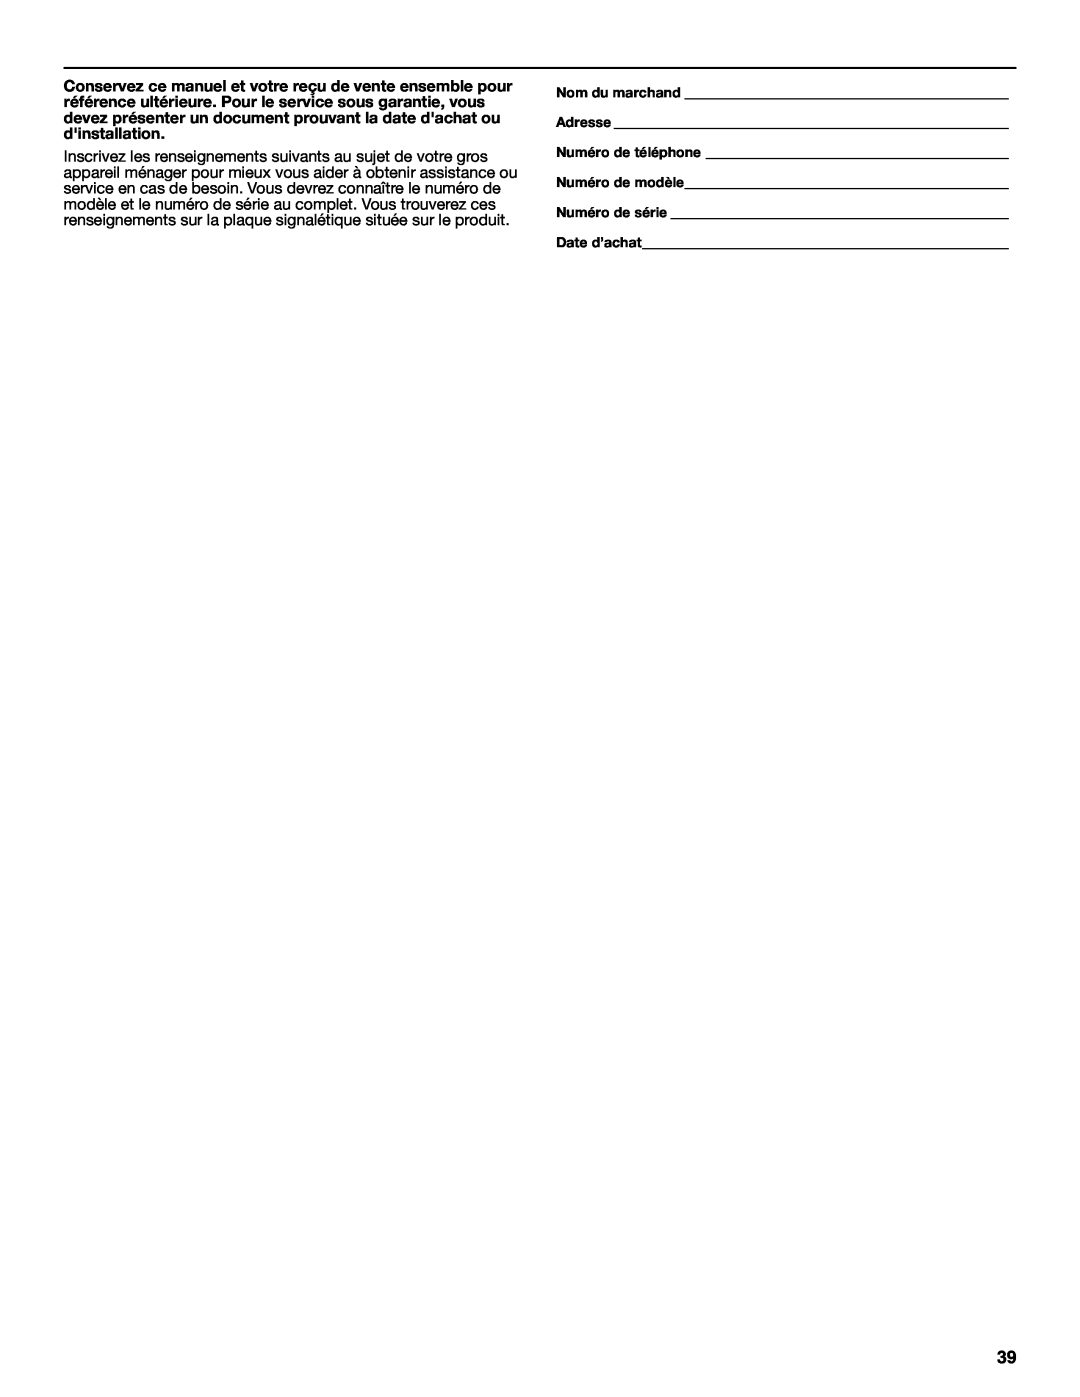 Whirlpool KEMS309BSS manual Nom du marchand Adresse Numéro de téléphone Numéro de modèle, Numéro de série Date d’achat 